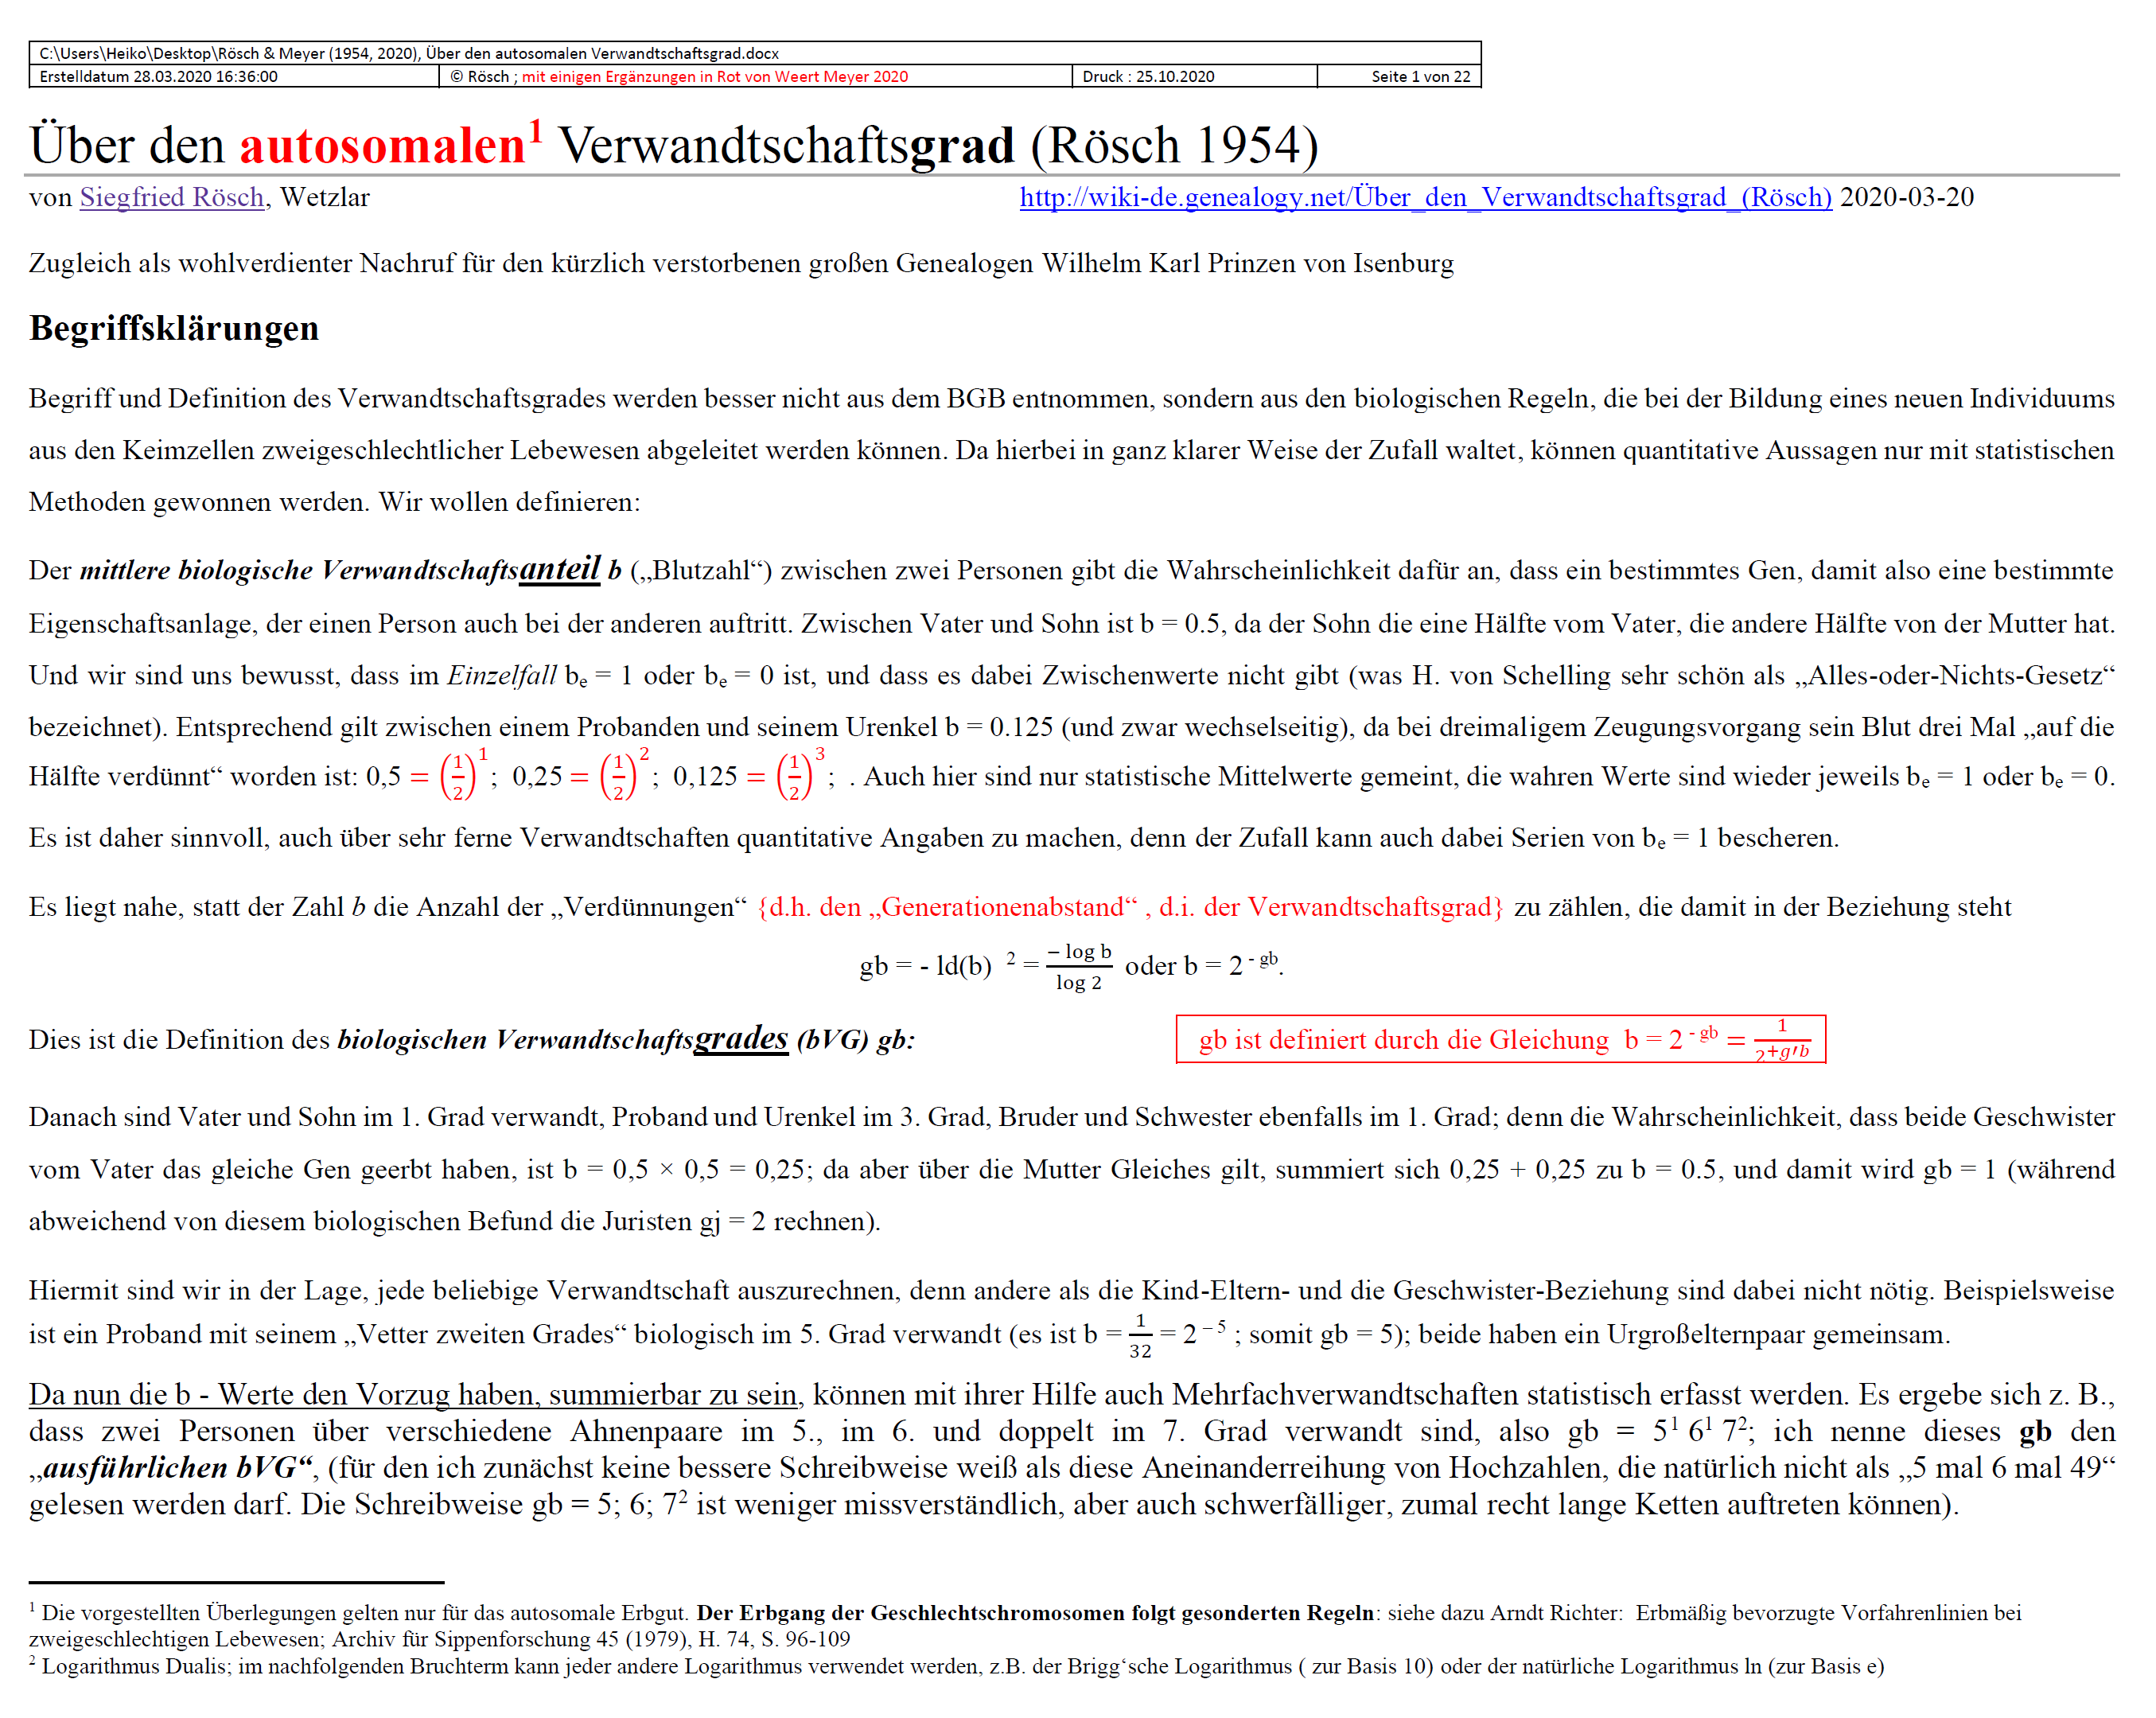 Rösch (1957), Über den (autosomalen) Verwandtschaftsgrad (Überarbeitung von Weert Meyer, 2020)